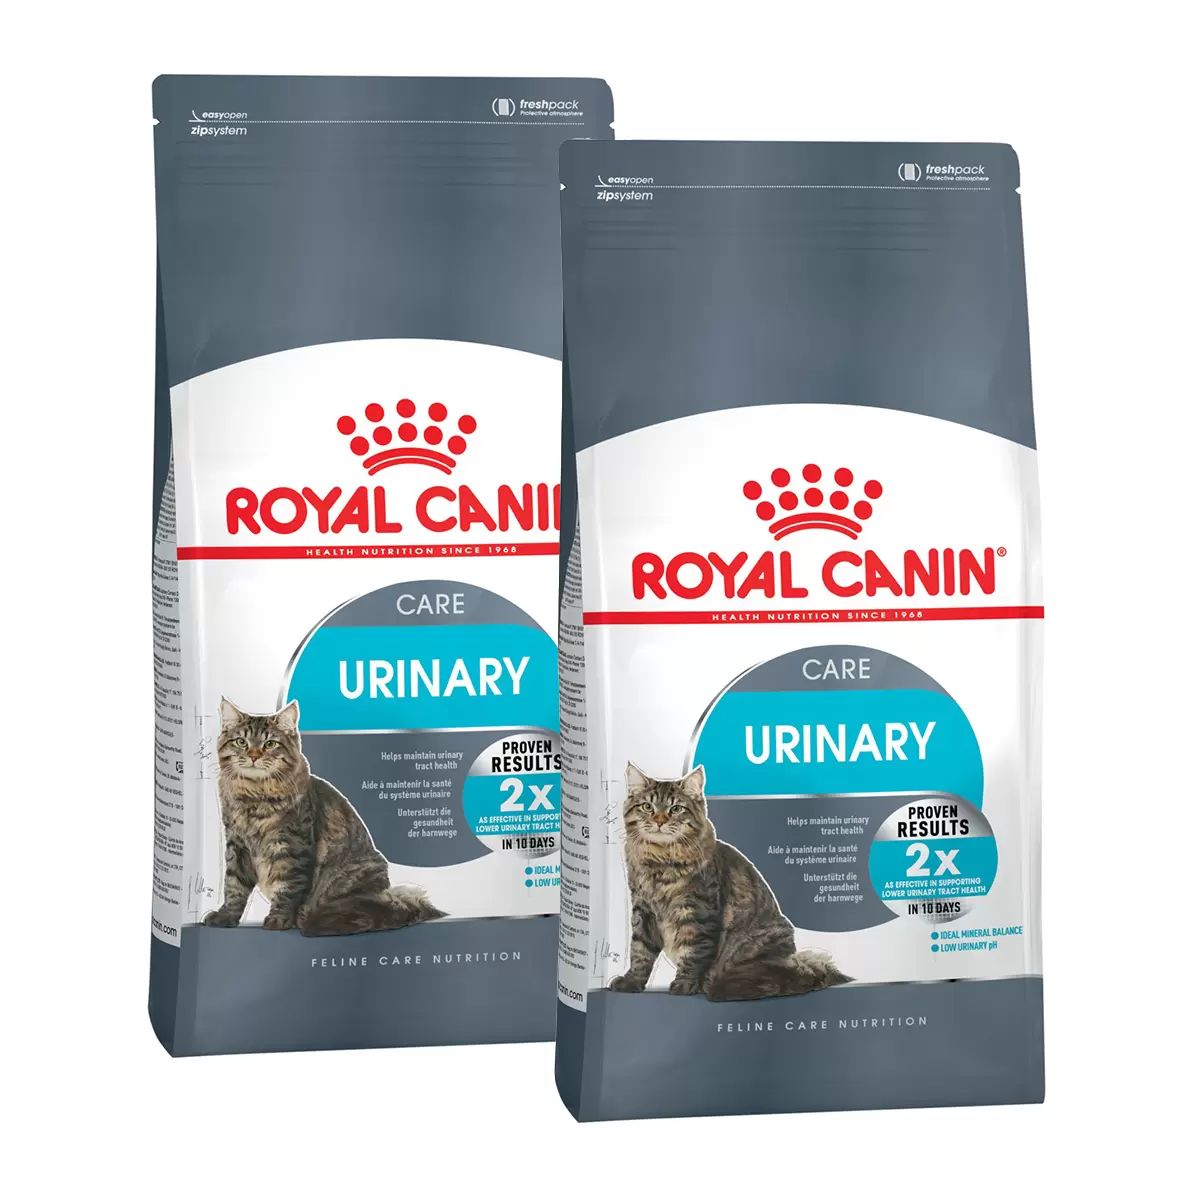 Royal canin urinary care для кошек. Роял Канин Лайт Вейт. Корм Роял Канин Light Weight Care для кошек. Роял Канин для кошек Light Weight Care 85 g. Royal Canin Urinary для кошек.